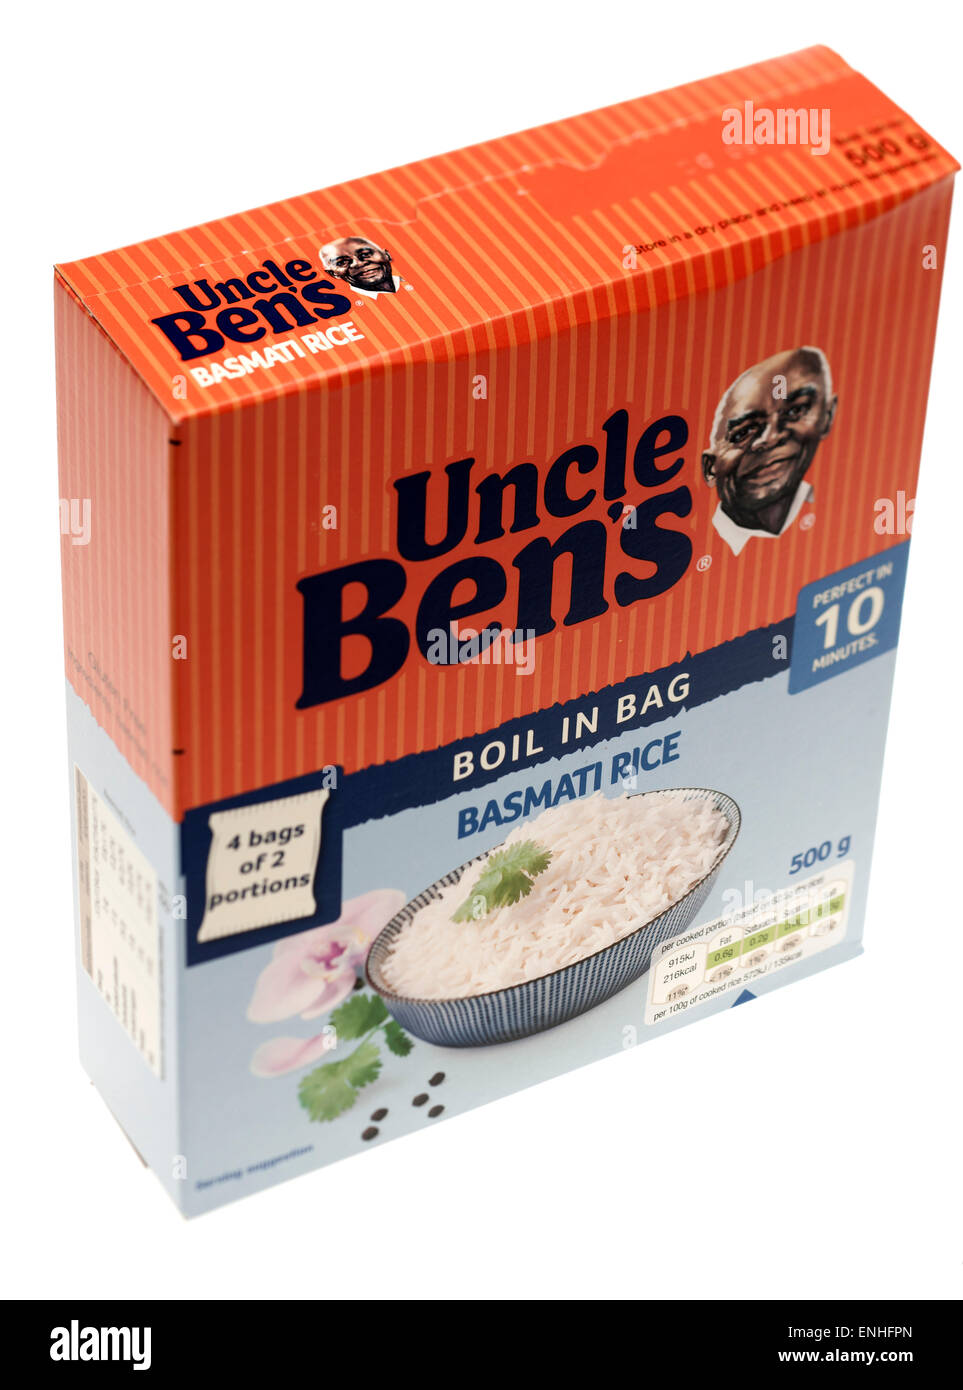 Caja de Uncle Bens cuatro bolsas de arroz Basmati de dos porciones. Foto de stock